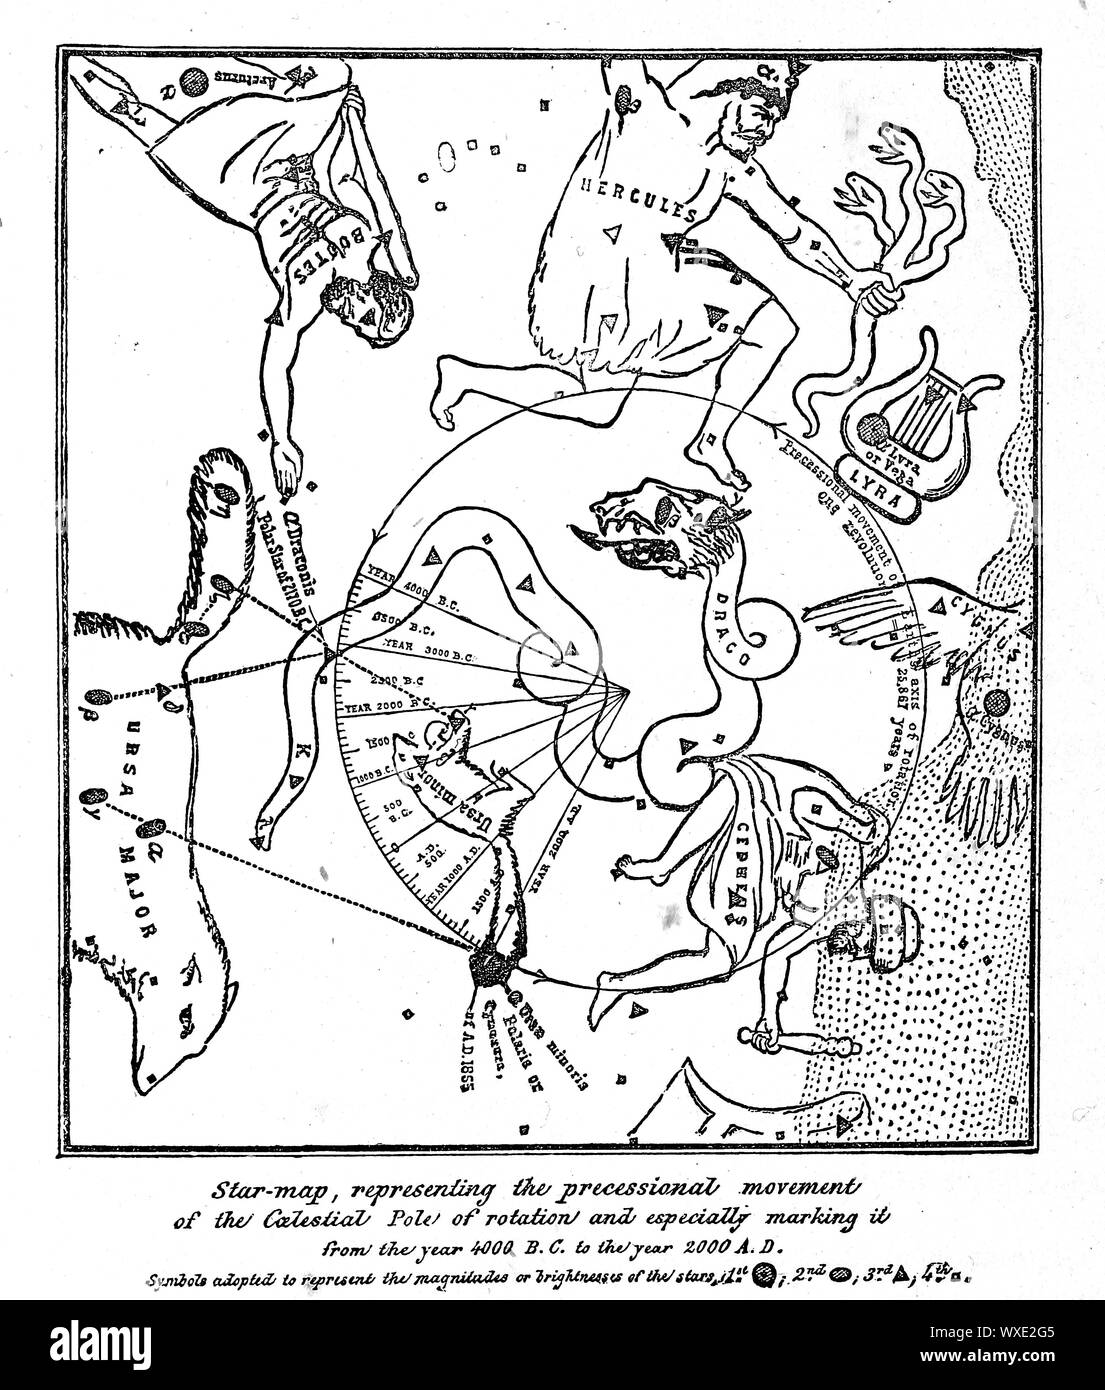 Ilustración astronómica. Imagen antigua Foto de stock